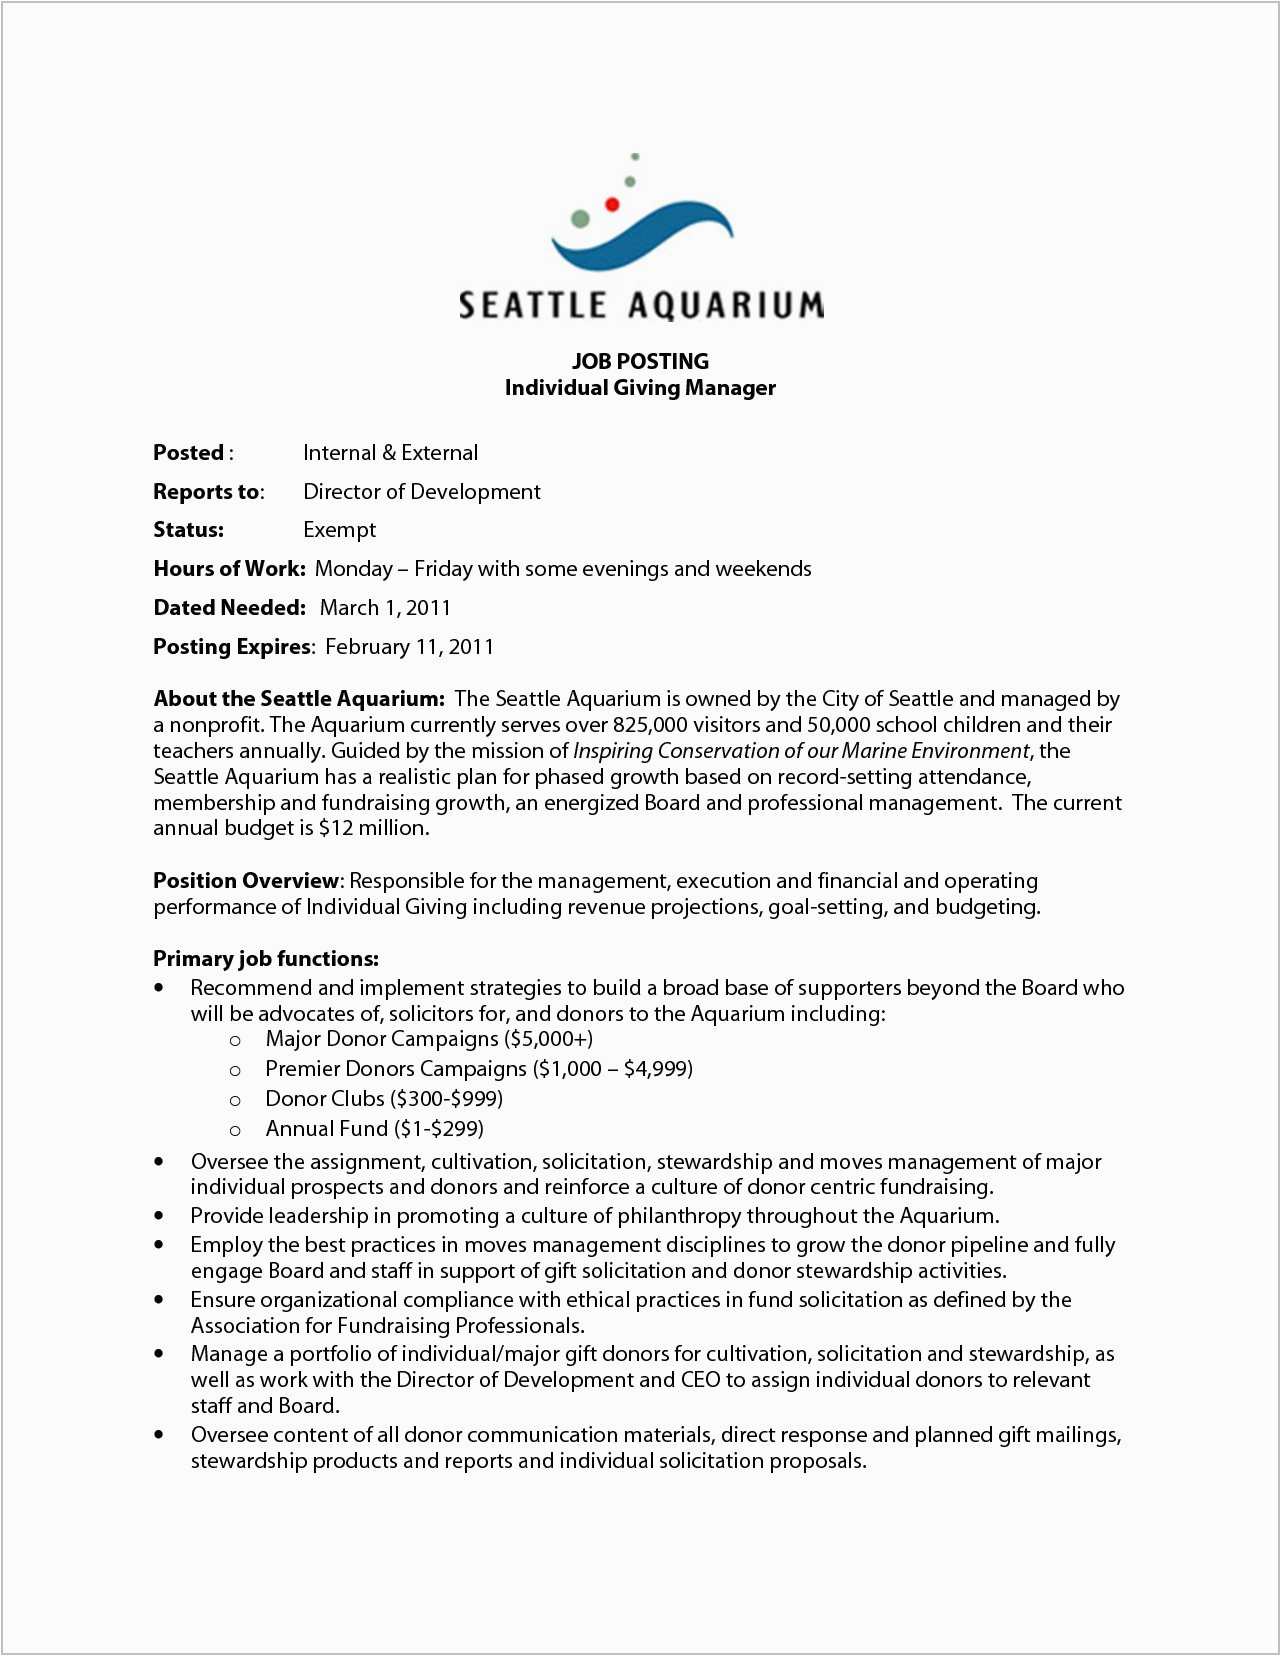 Sample Resume Cover Letter for Internal Position Cover Letter for Internal Job Posting Example Cover